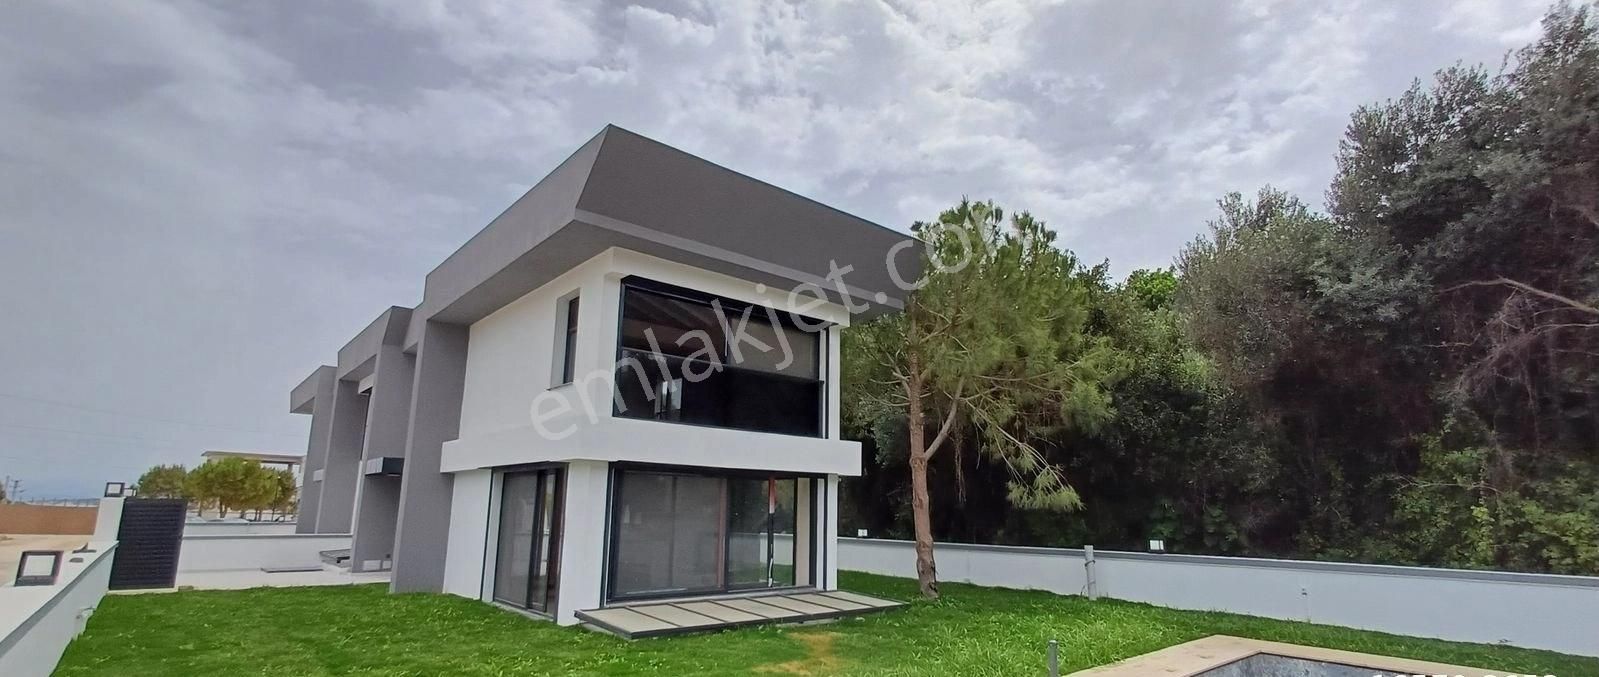 Çeşme Cumhuriyet Satılık Villa DALYAN DENİZE 100M. 5+1 3 KATLI 300 M2 ARSALI HAVUZLU LÜKS VİLLA